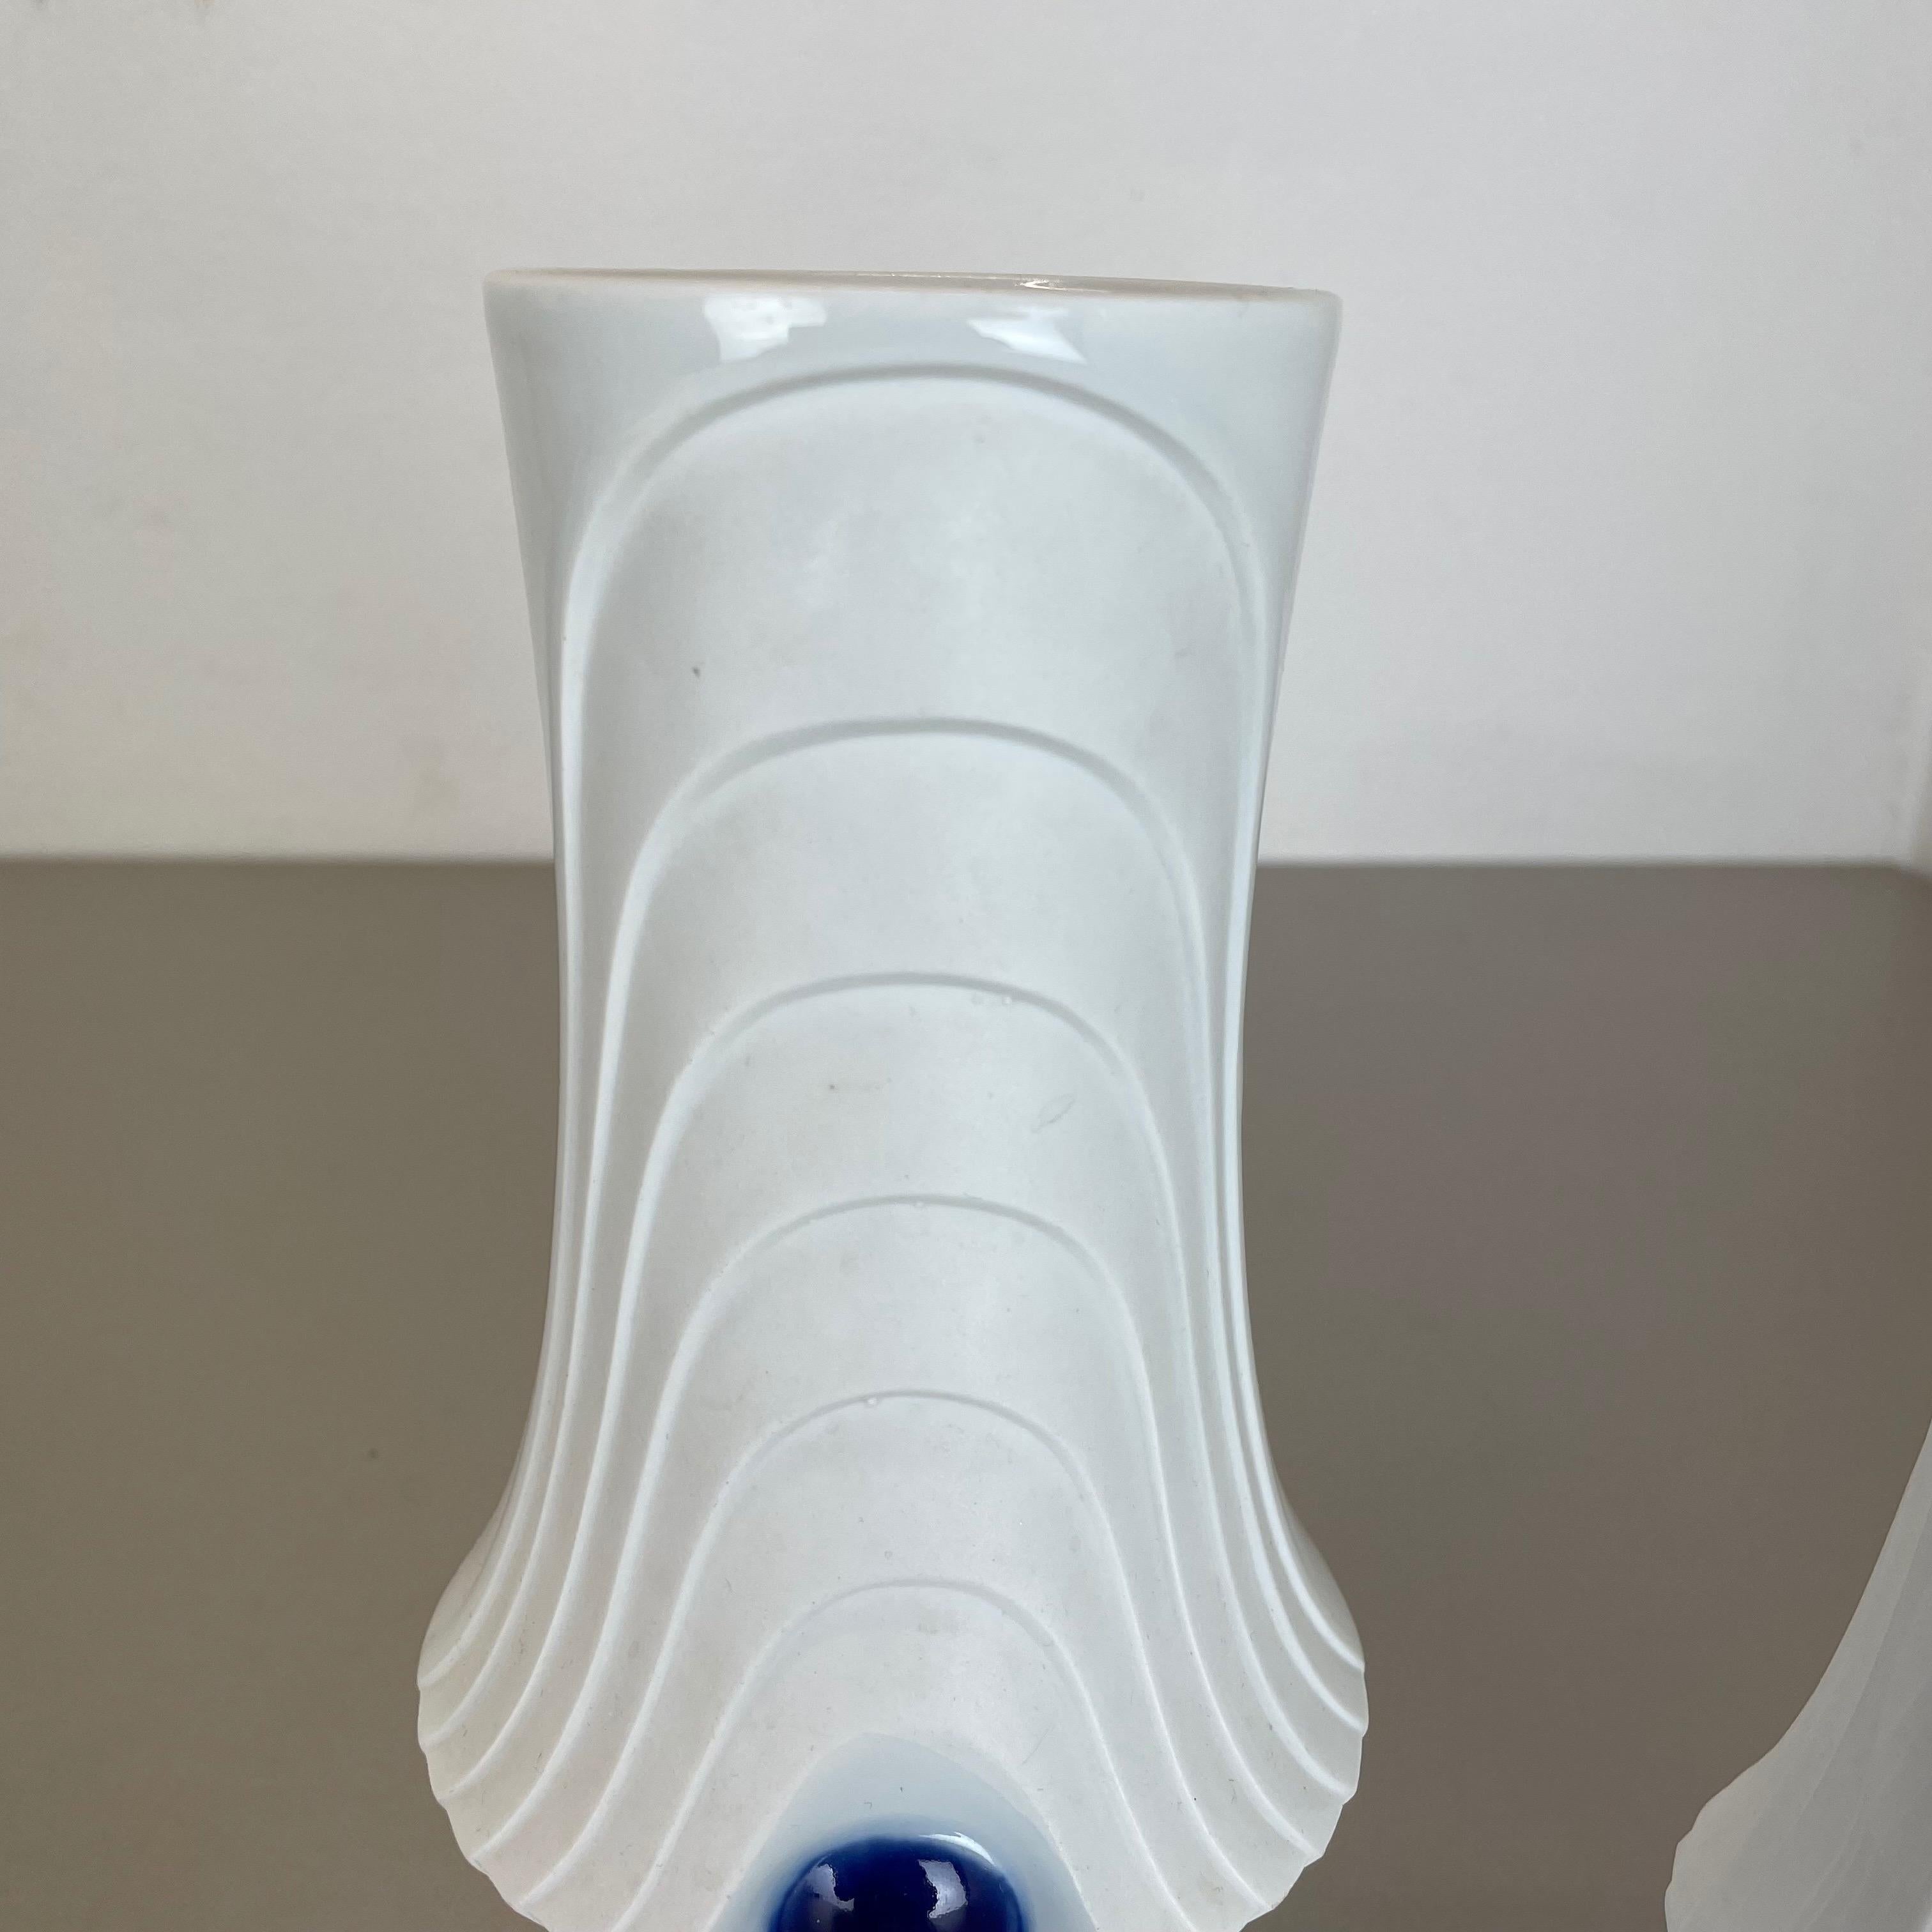 Set of 2 Original Porcelain Op Art Vase Made by Royal Bavaria KPM Germany, 1970s For Sale 1